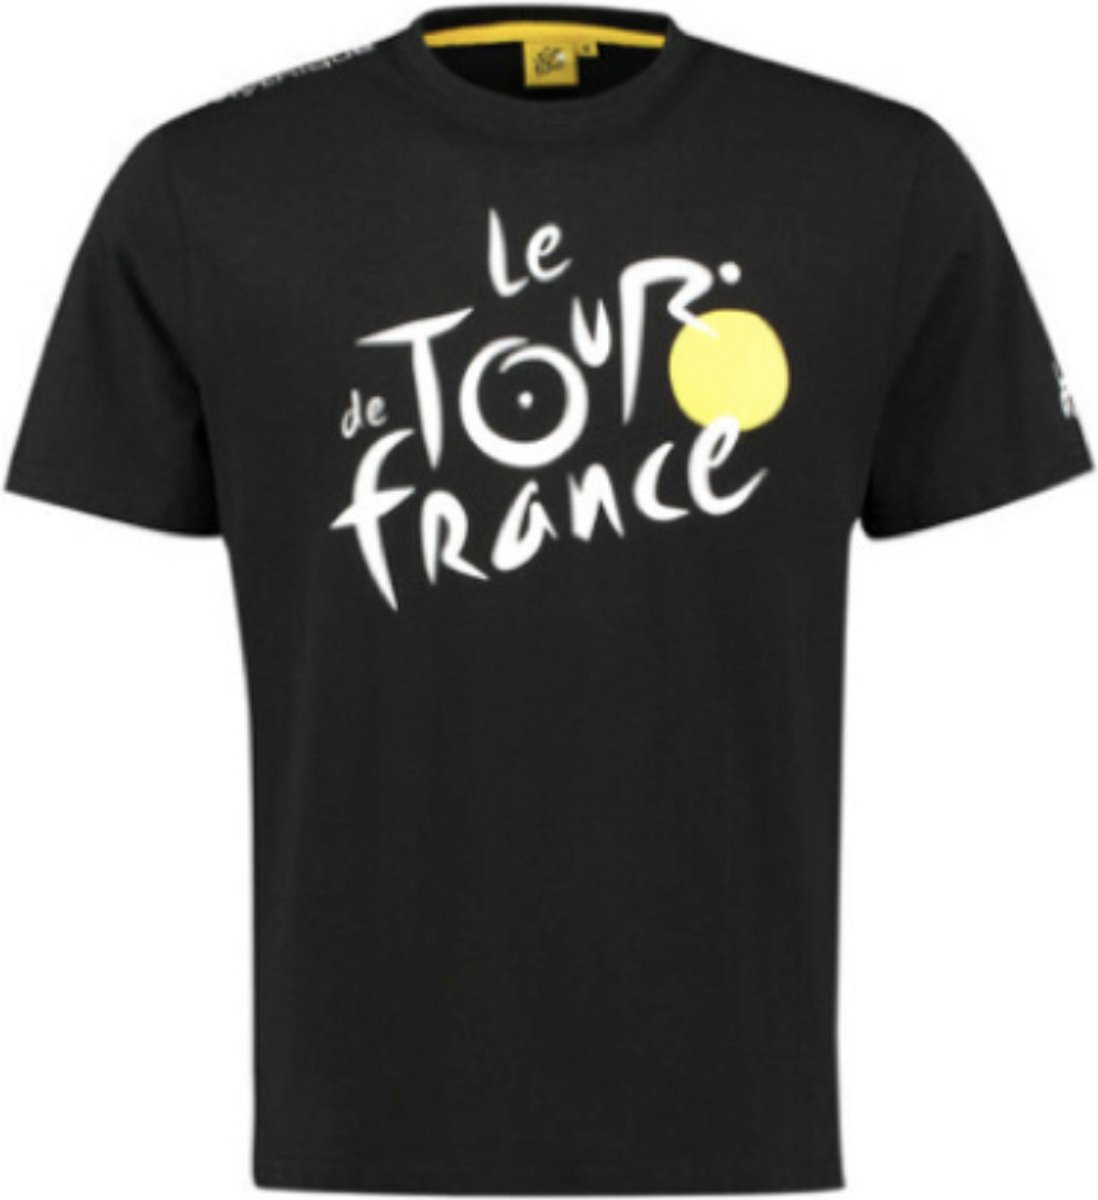 Tour de France - Officiële T-shirt - Zwart - S